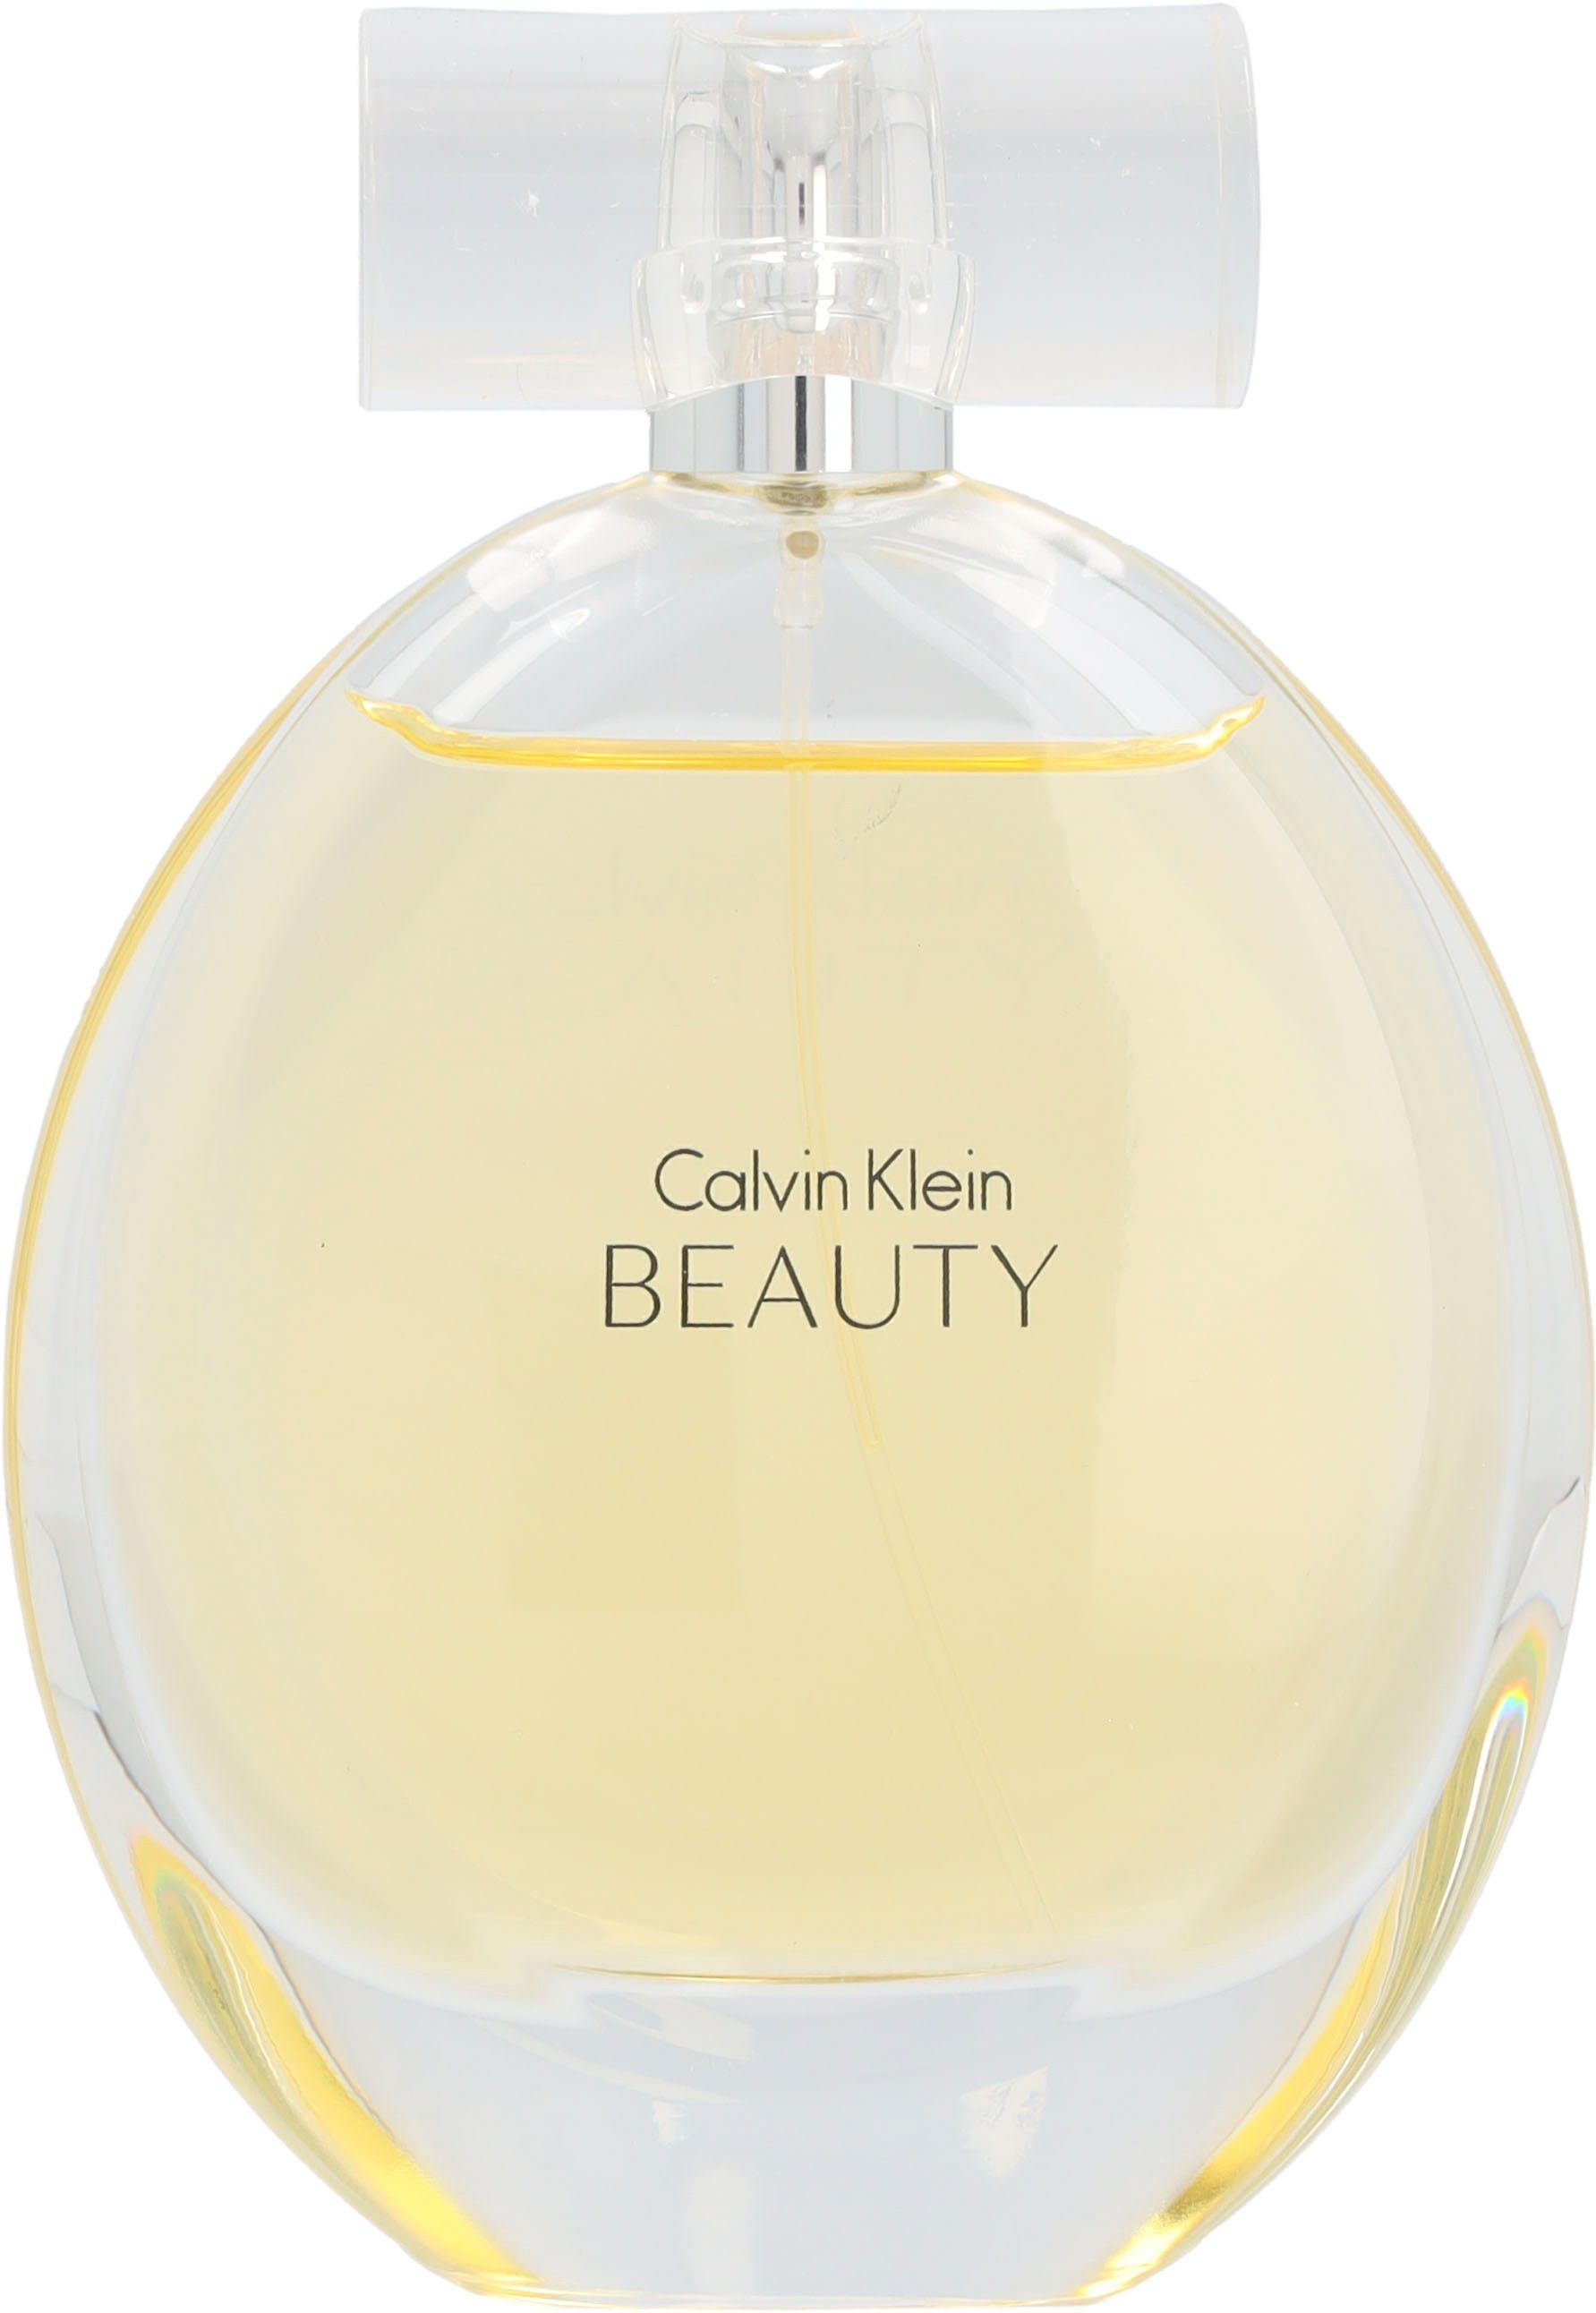 Klein Calvin Eau Parfum Beauty de